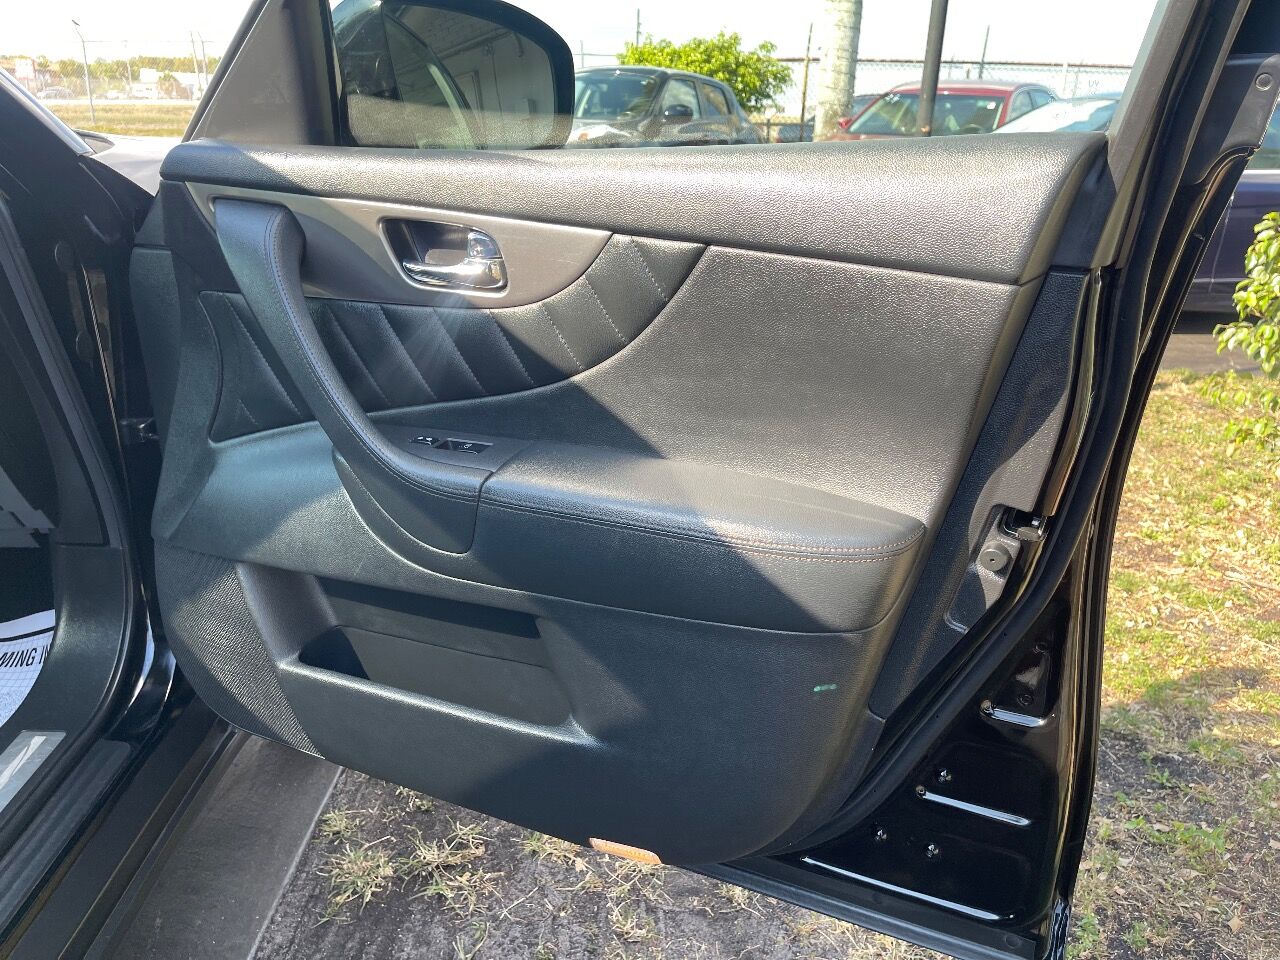 2017 Infiniti QX70 SUV - $18,900